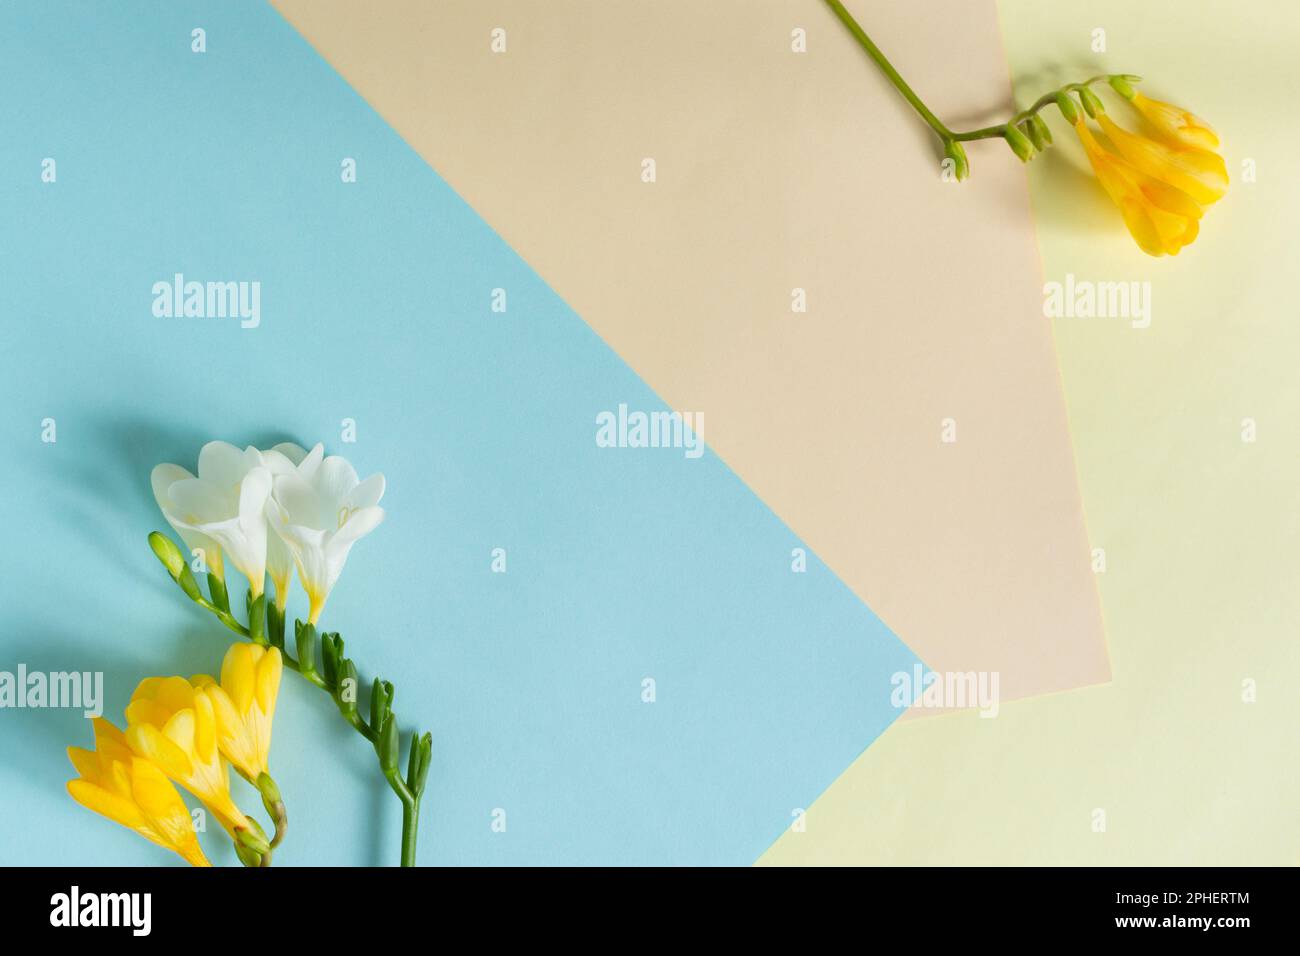 Fête des mères. Carte de vœux avec fleurs de freesia blanc jaune sur un fond pastel délicat. Superbe design minimaliste printanier, présentation créative Banque D'Images